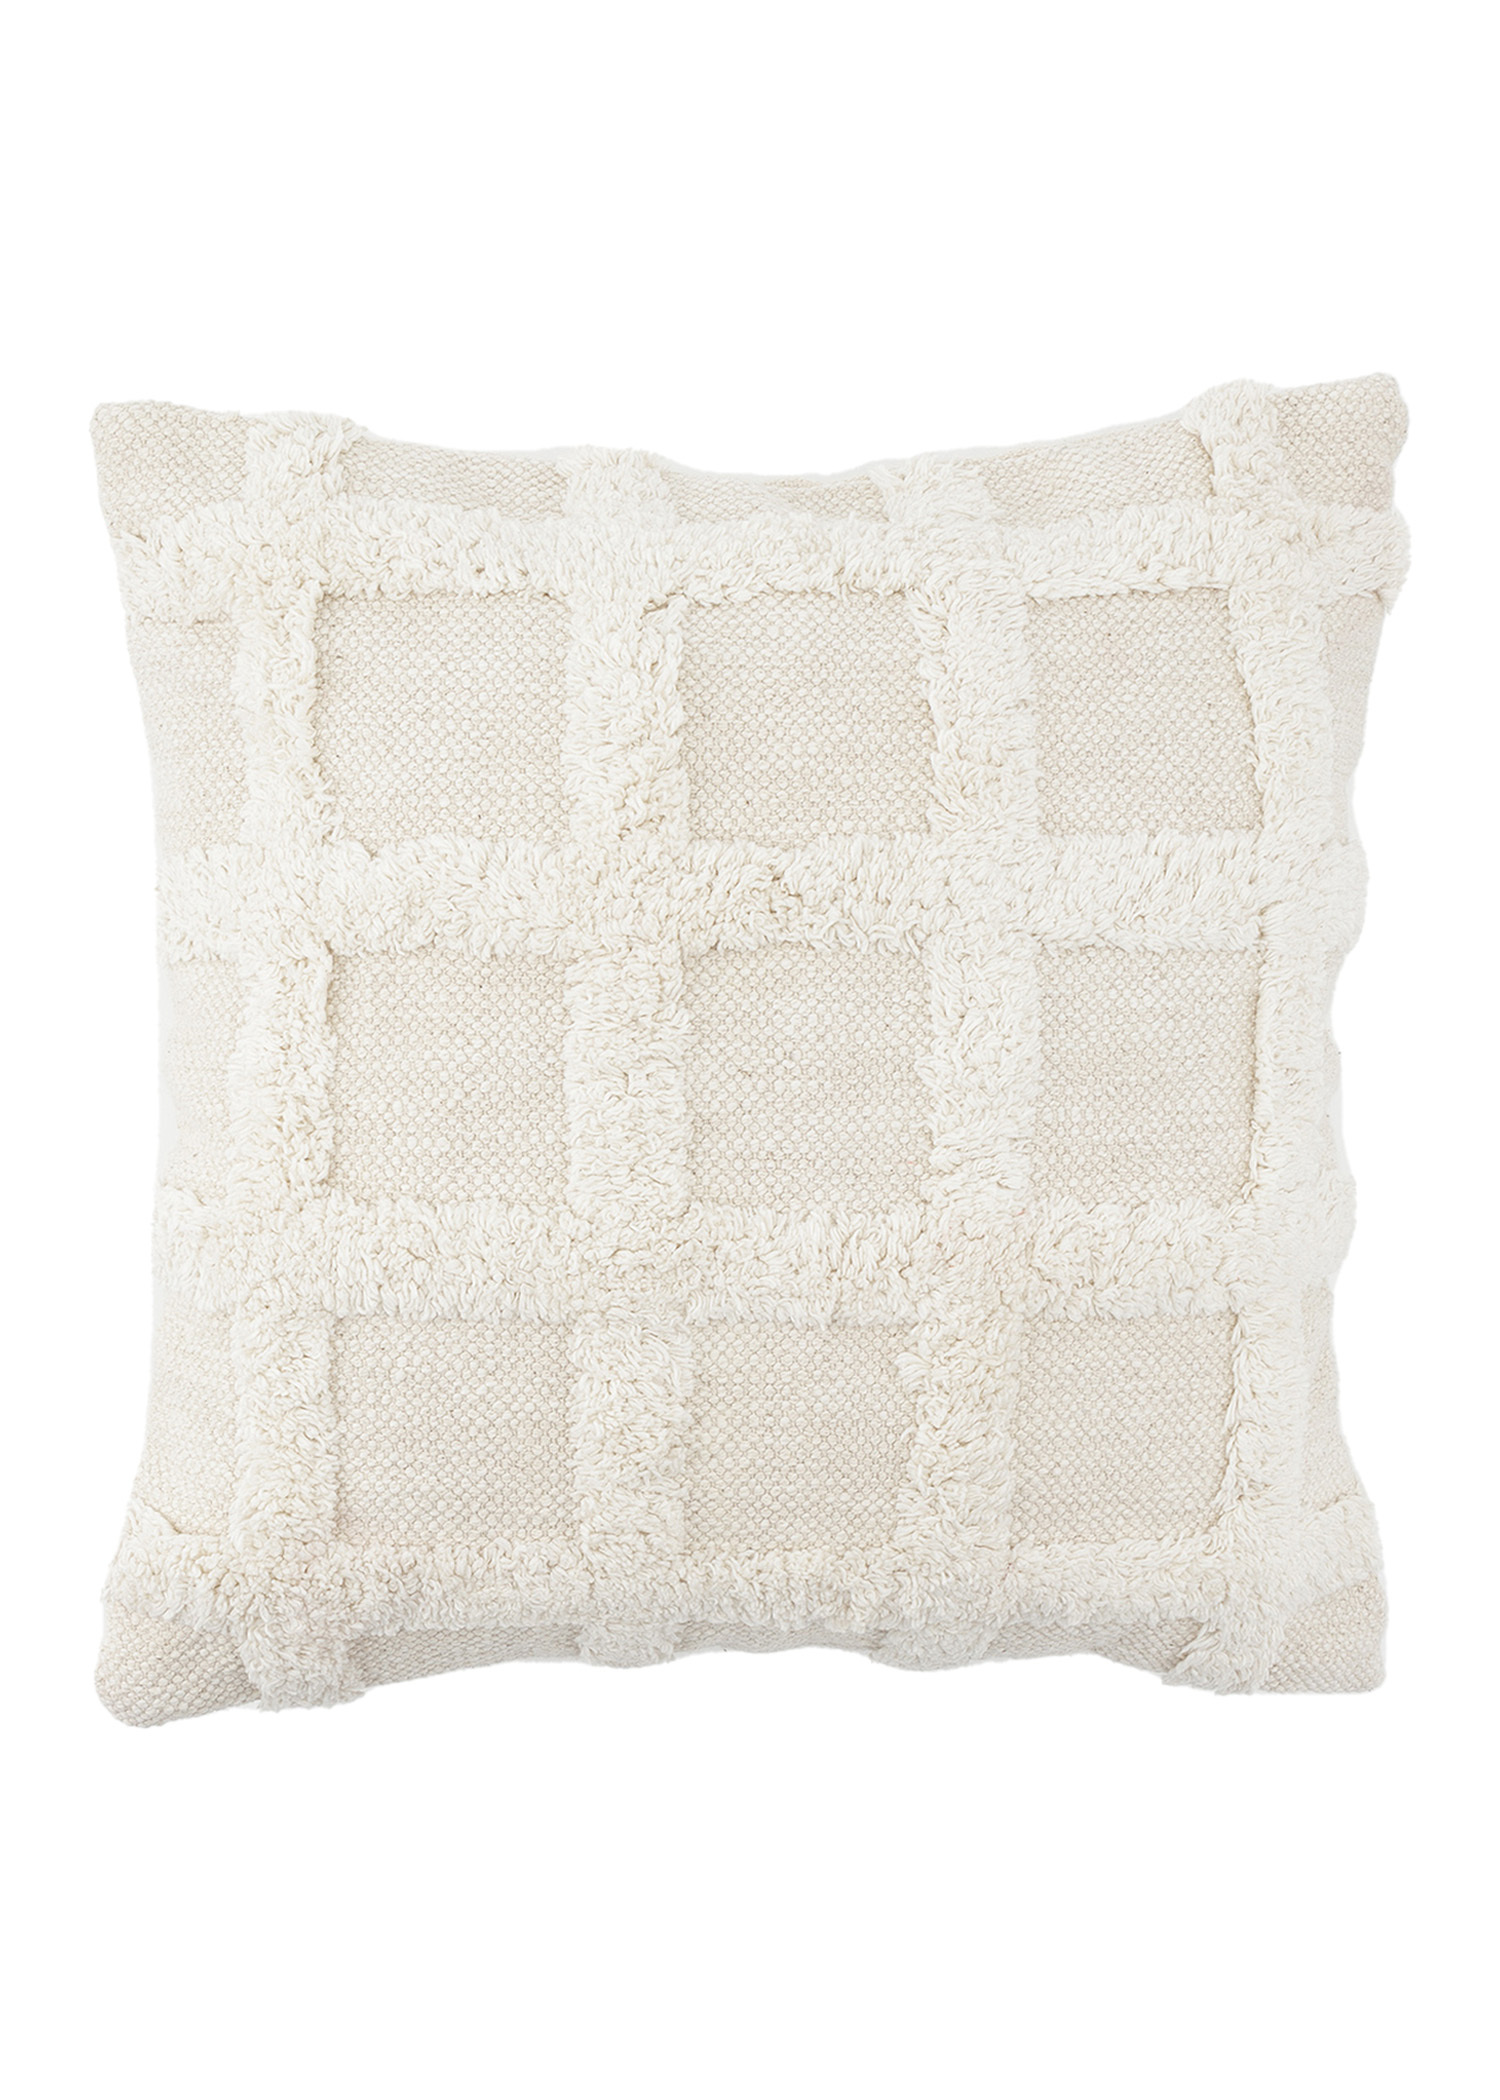 White tufted cushion Image 0